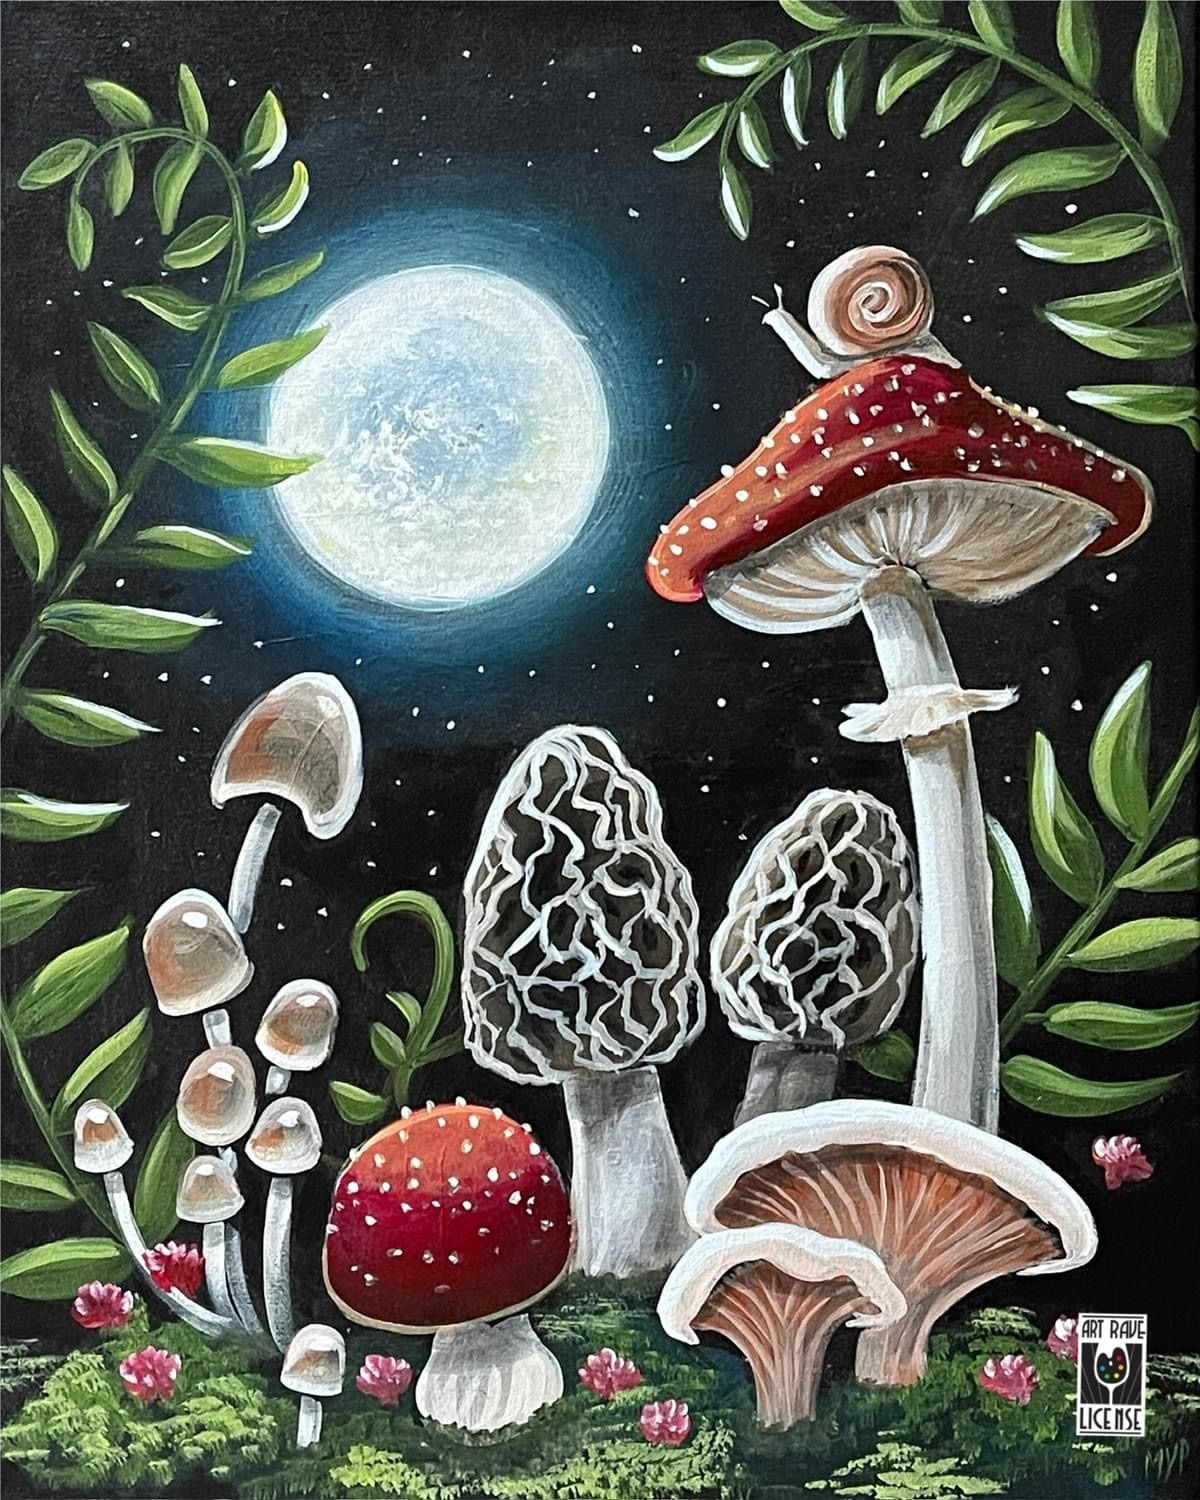 *15 SPOTS LEFT*Paint Midnight Mushroom at Oregon City Wichita 3pm